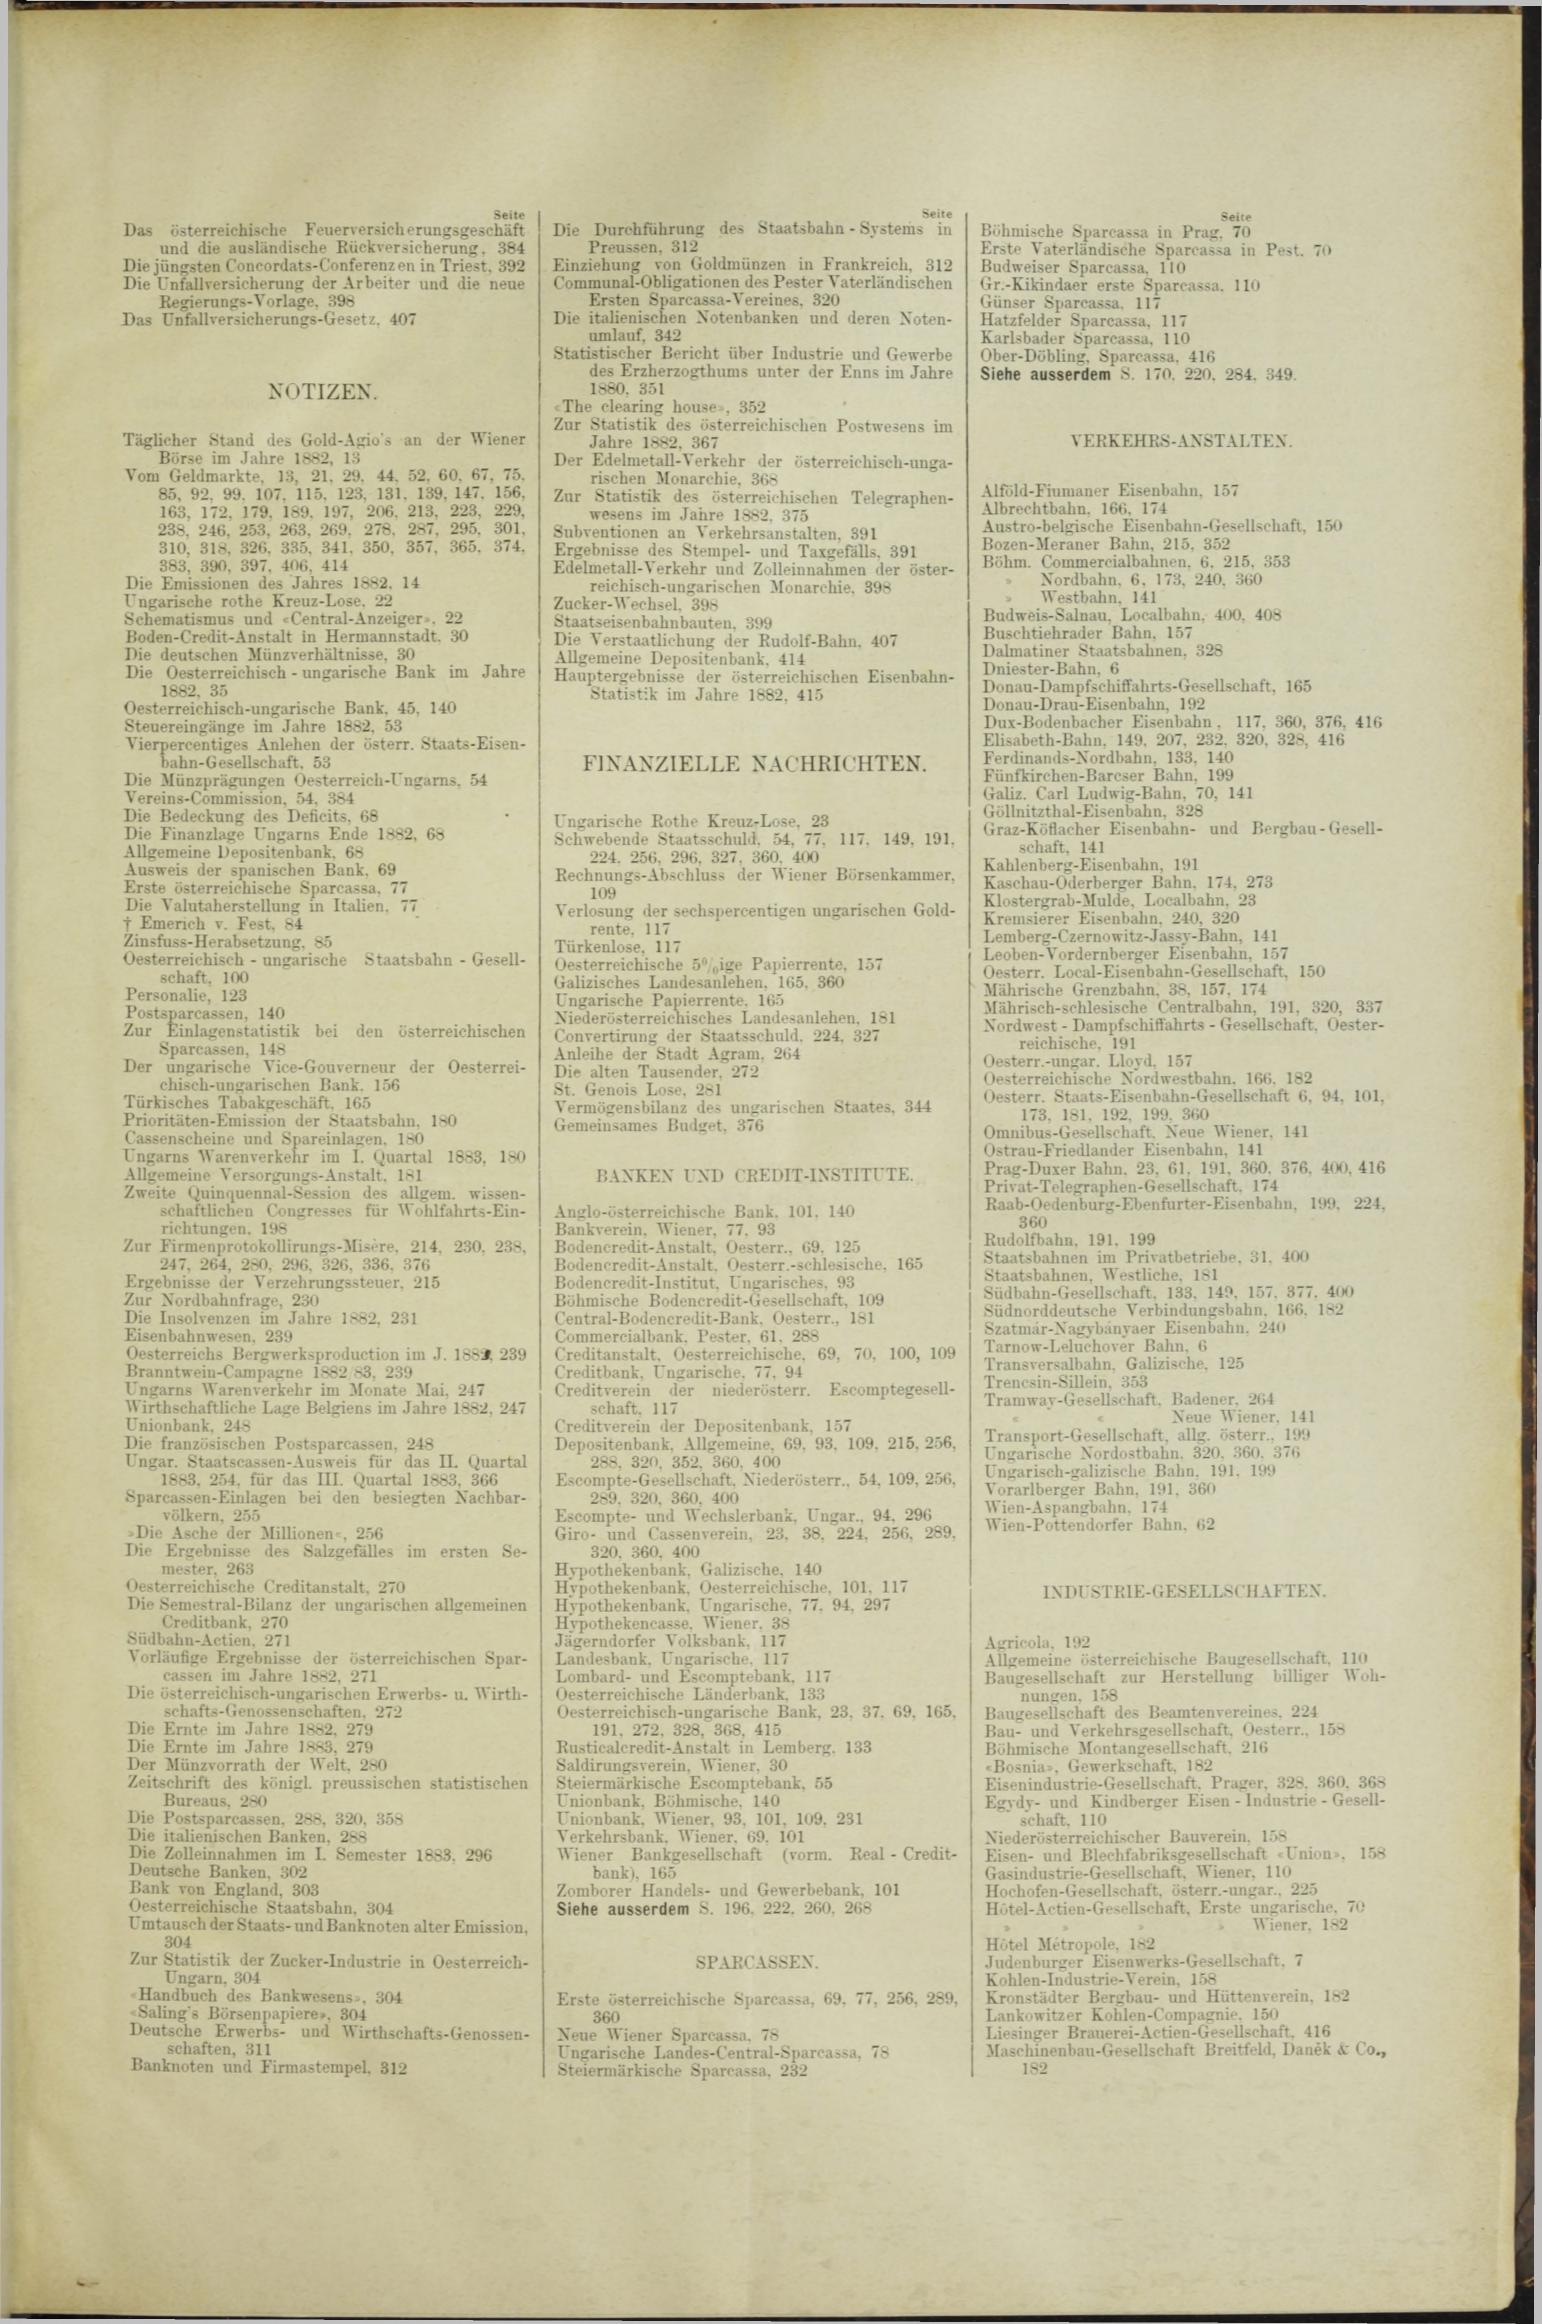 Der Tresor 06.12.1883 - Seite 11